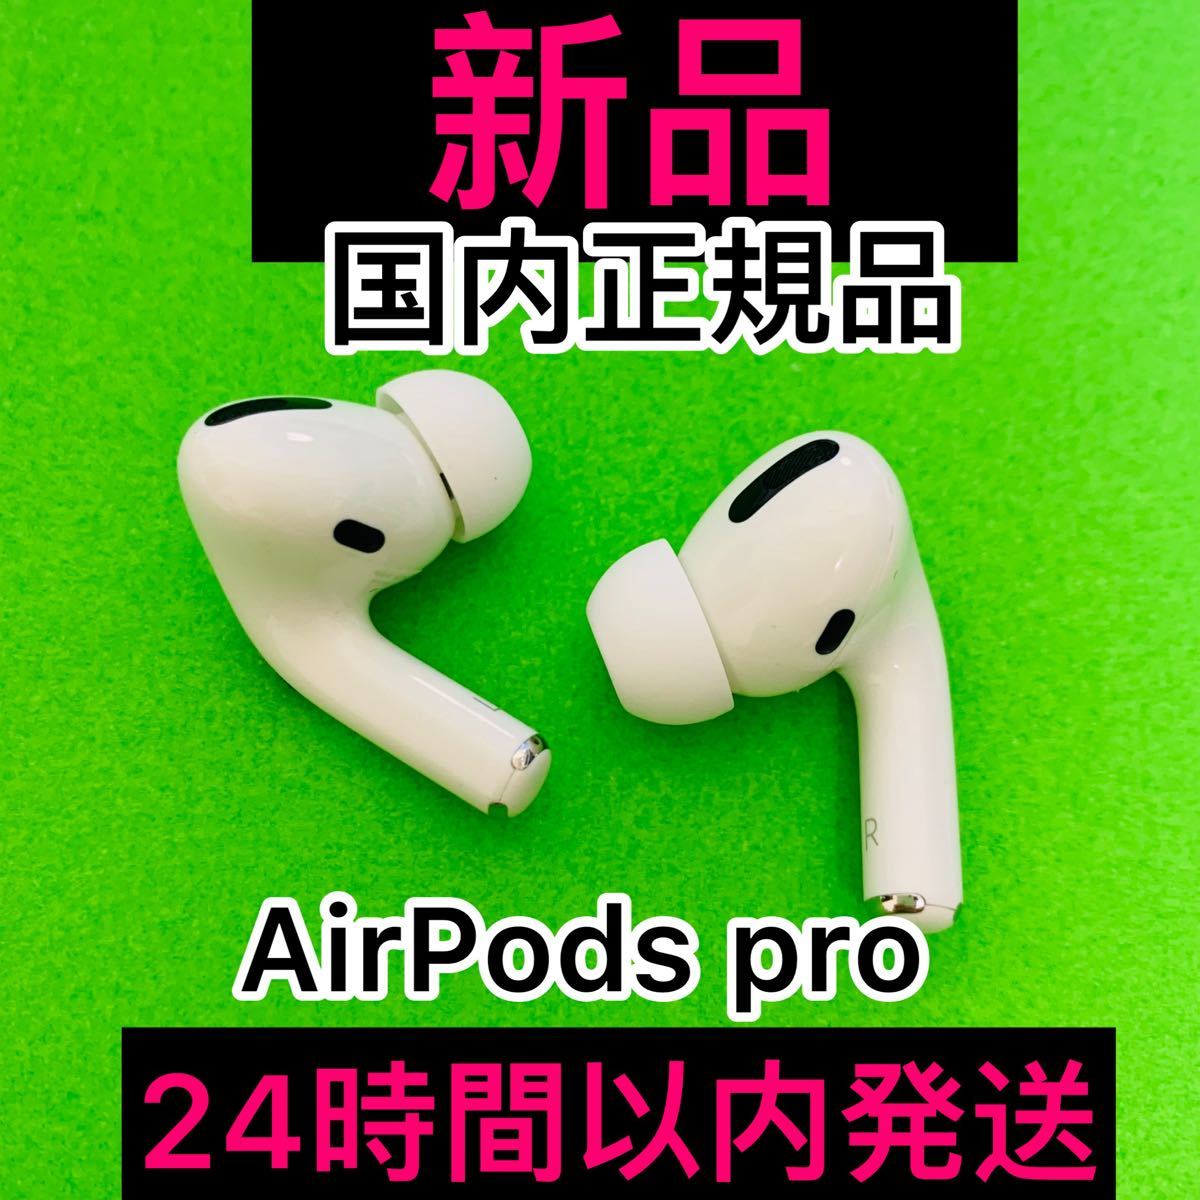 驚きの値段 24時間以内発送 Airpods pro エアポッズプロ 両耳のみ 